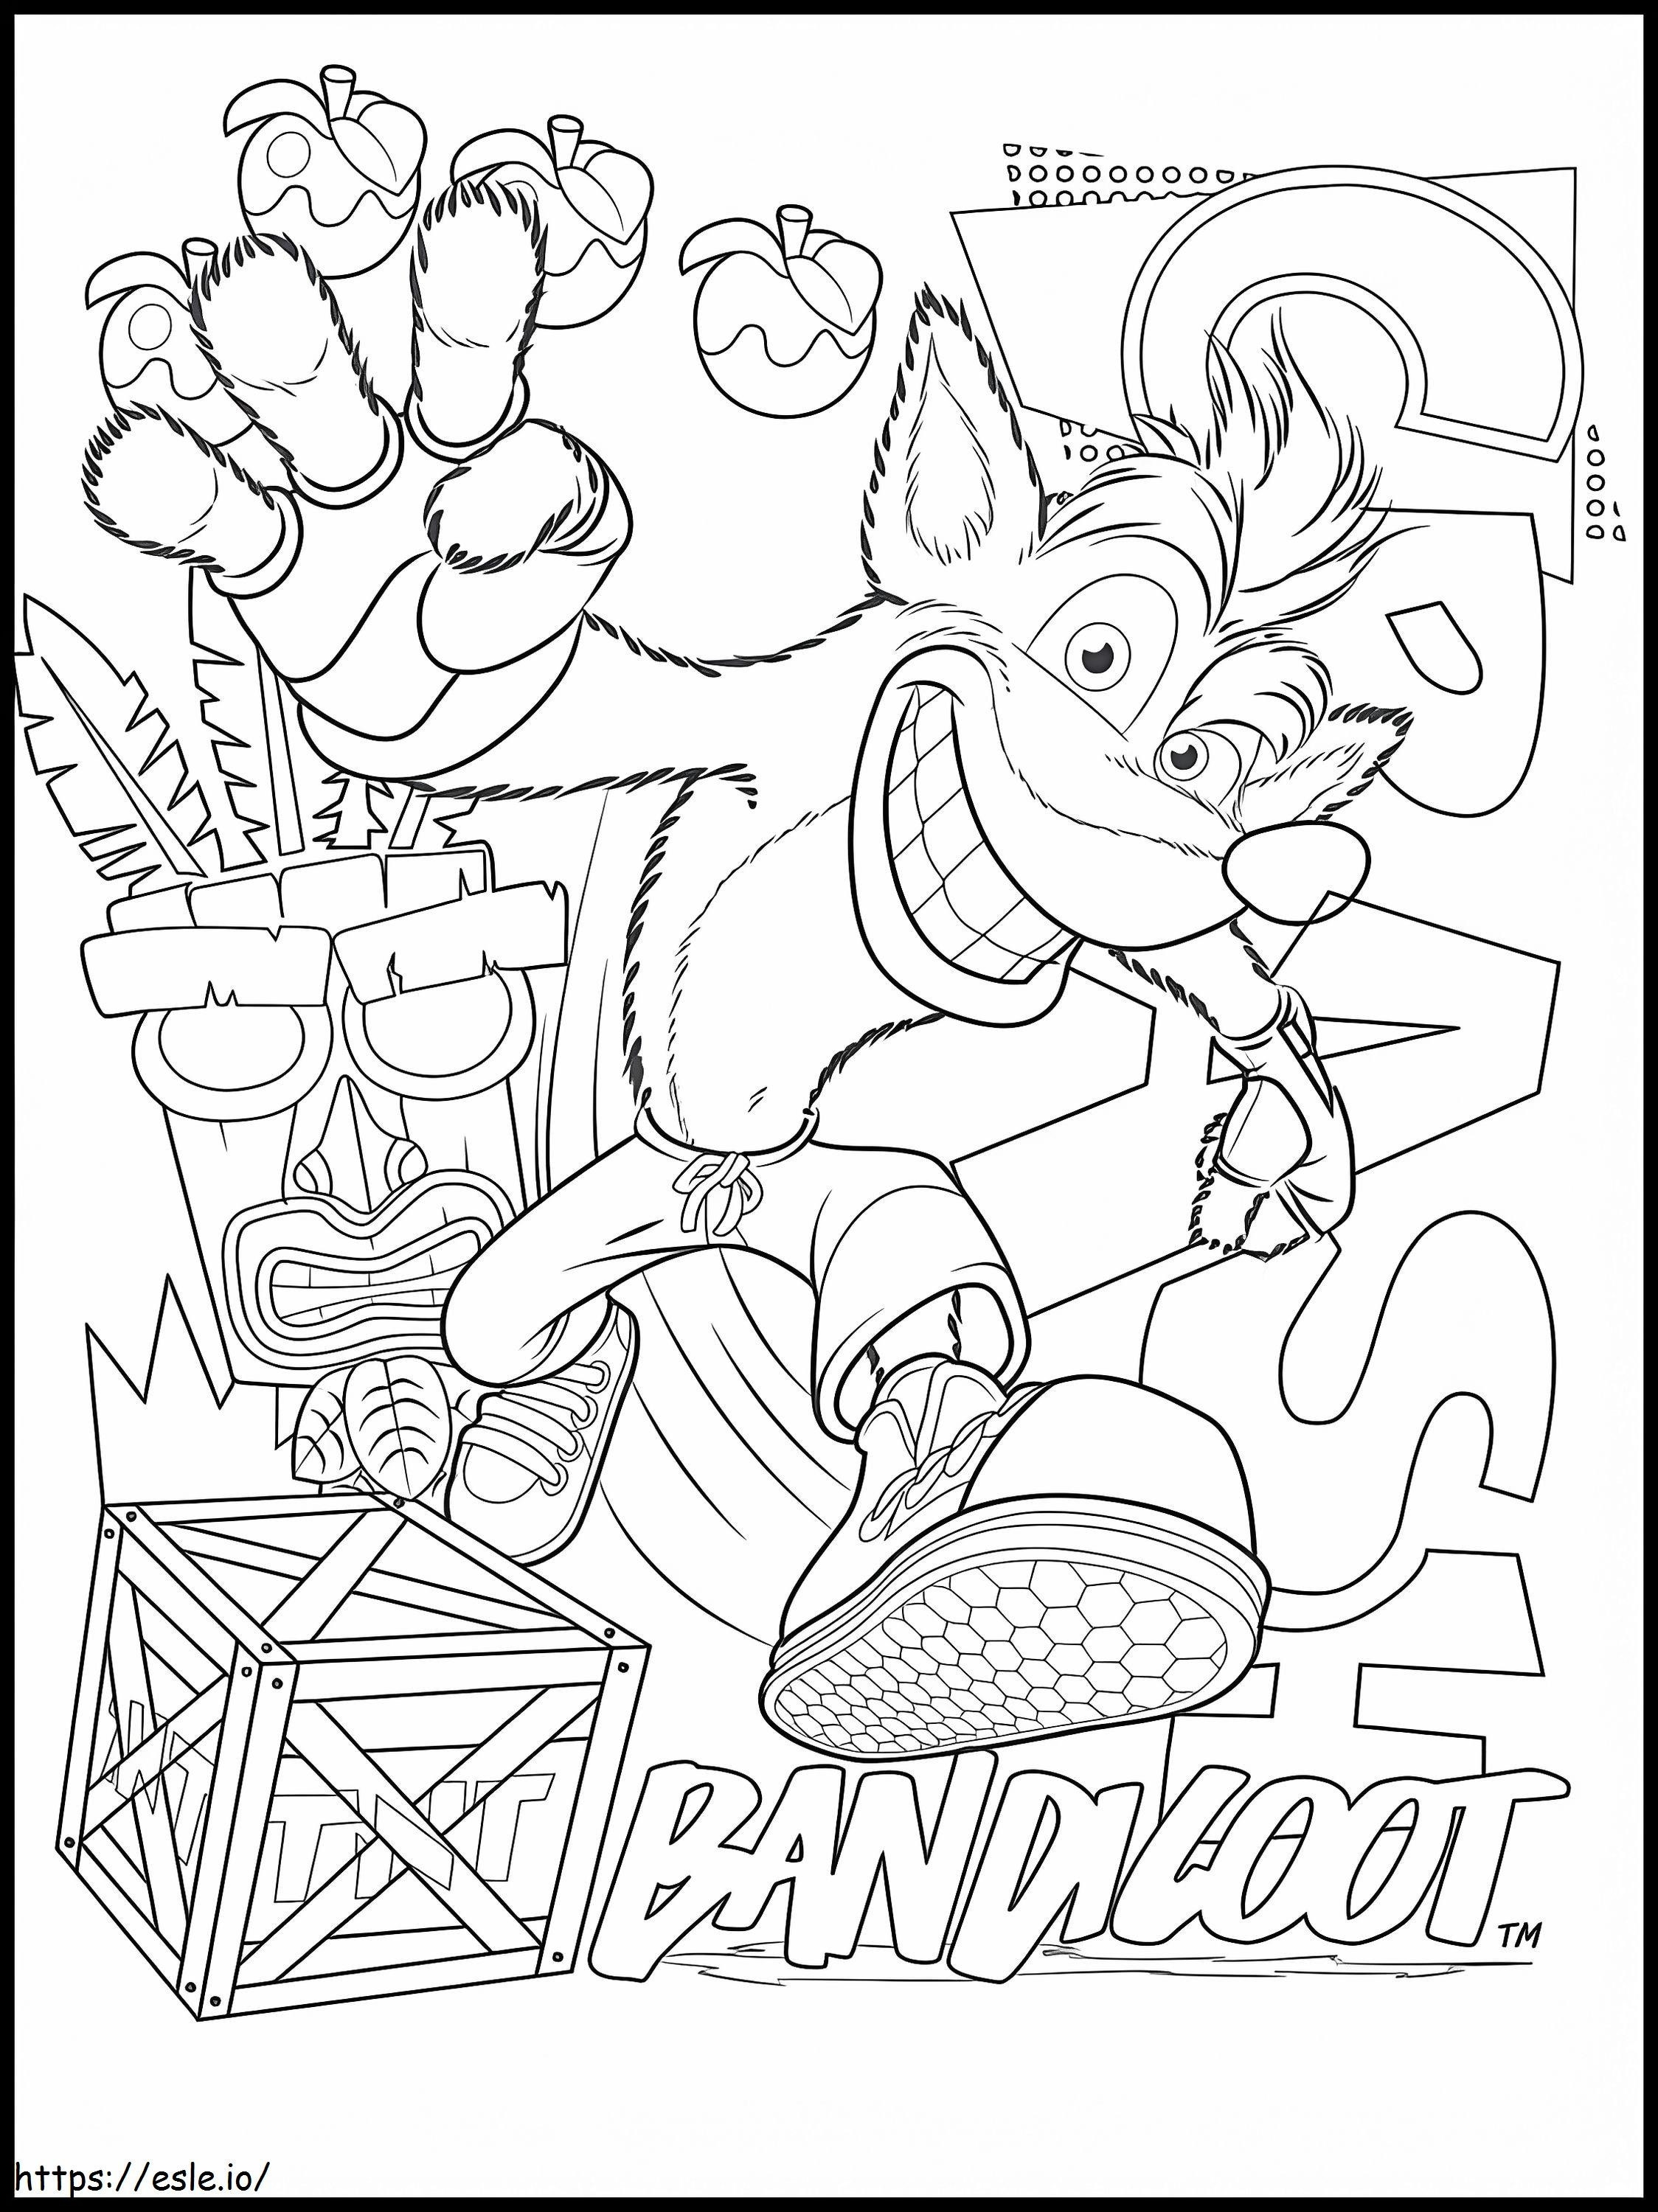 Crash Bandicoot 4 kleurplaat kleurplaat